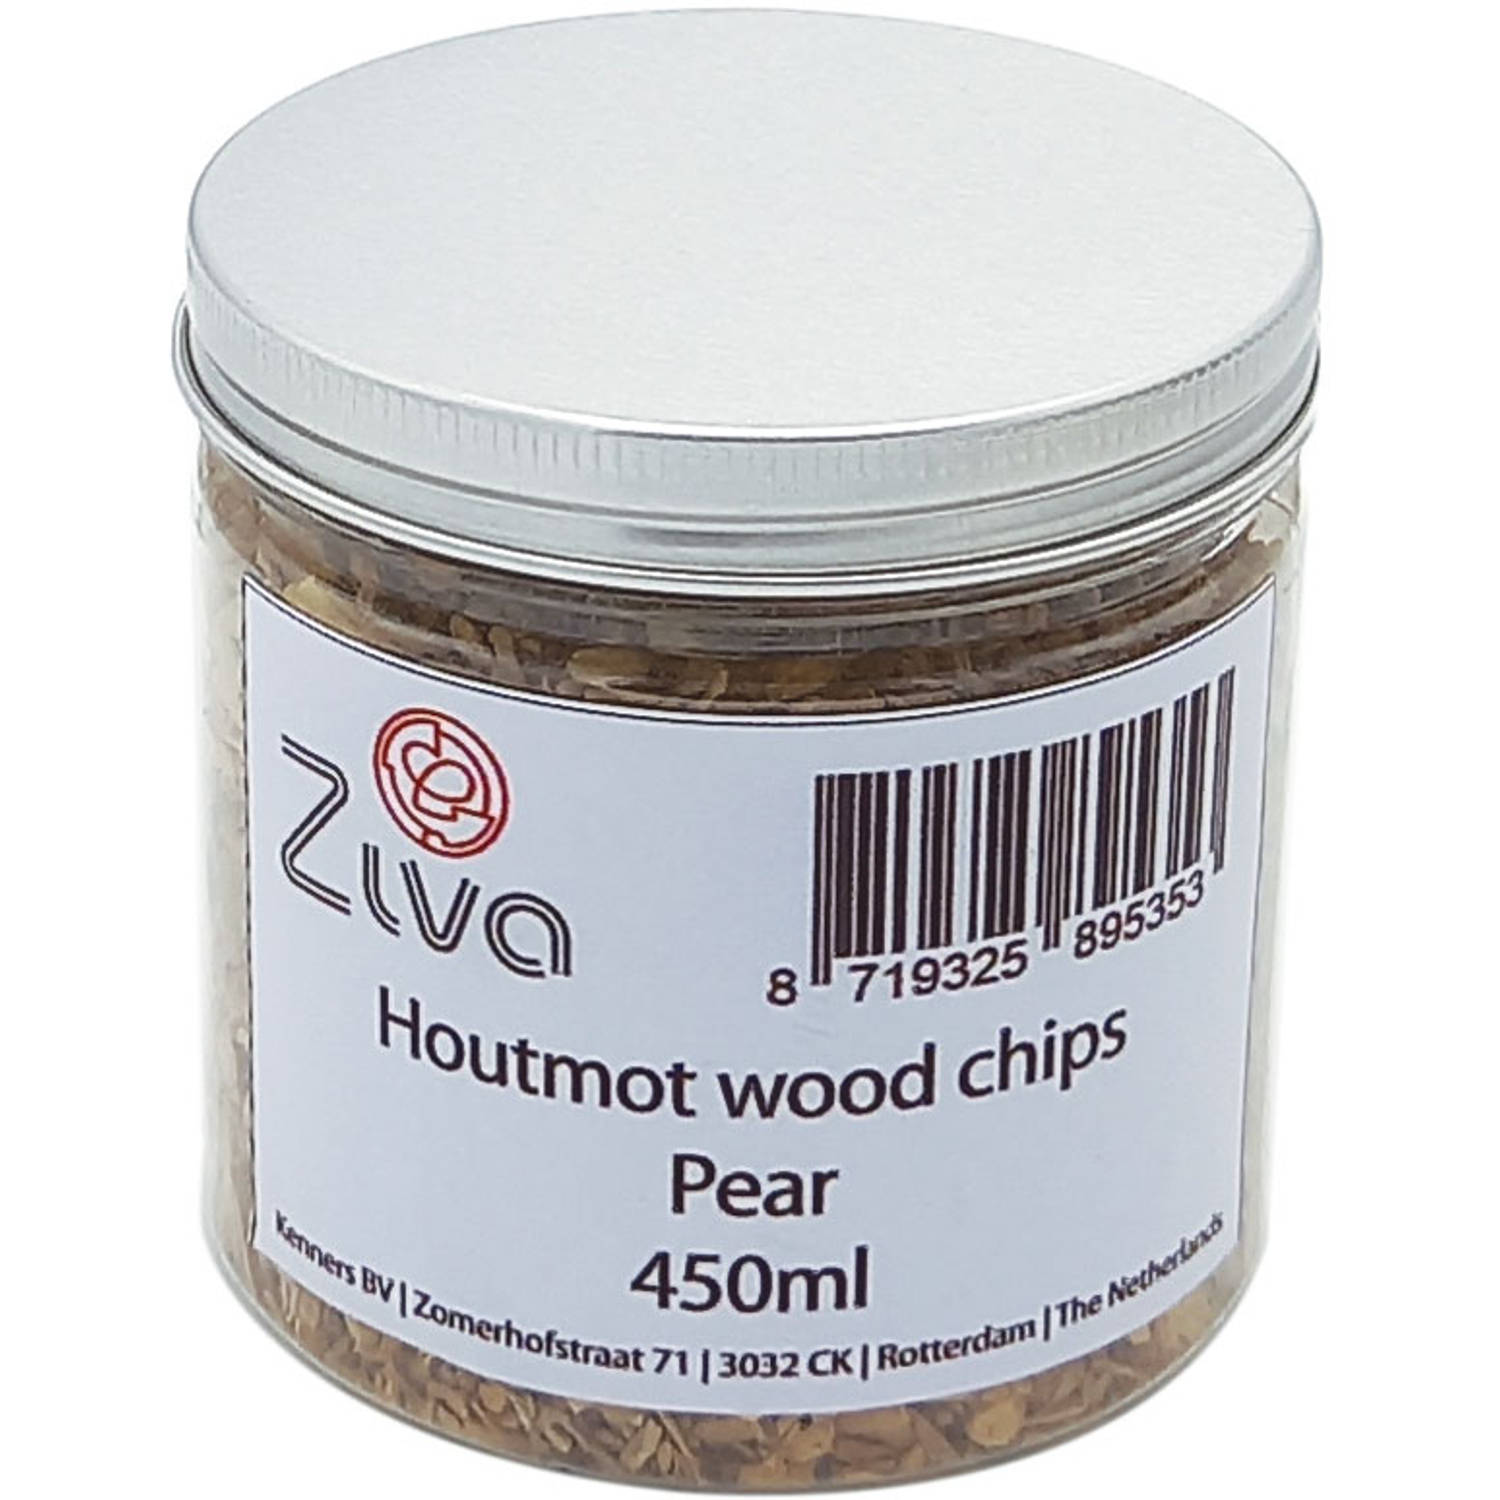 Ziva wood chips 450ml (Cherry)